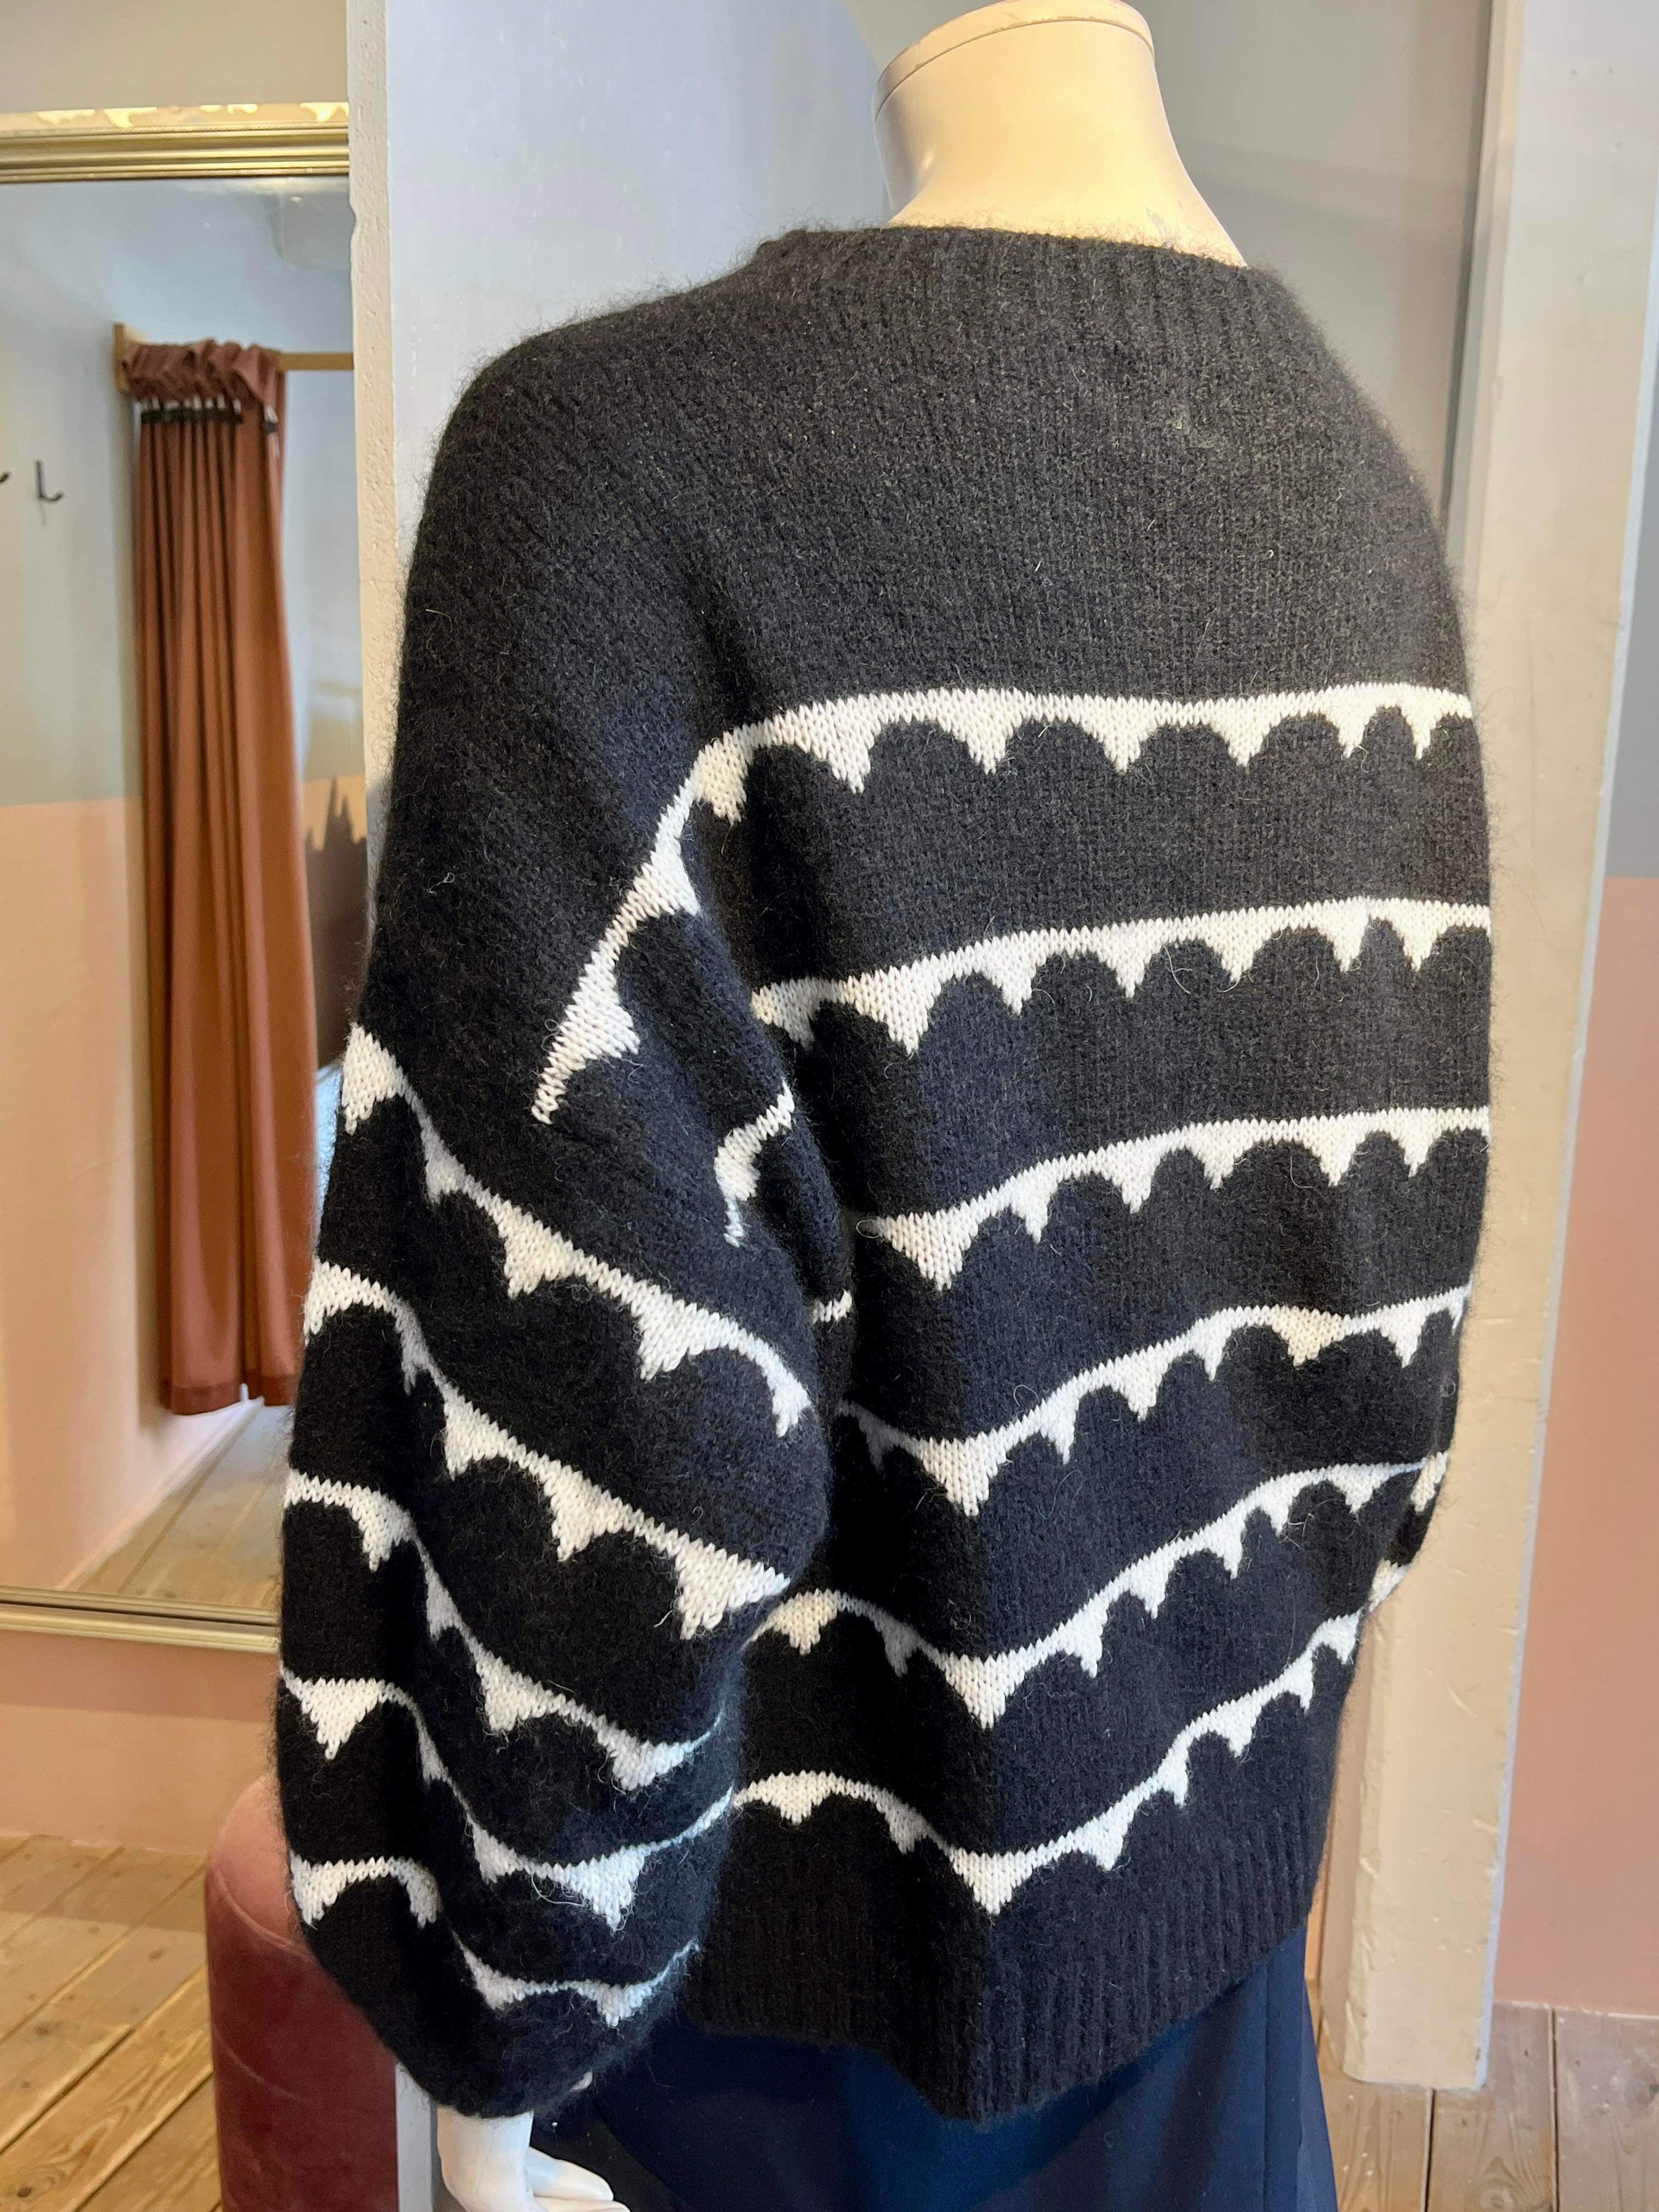 Gossia - Sweater - Size: One Size